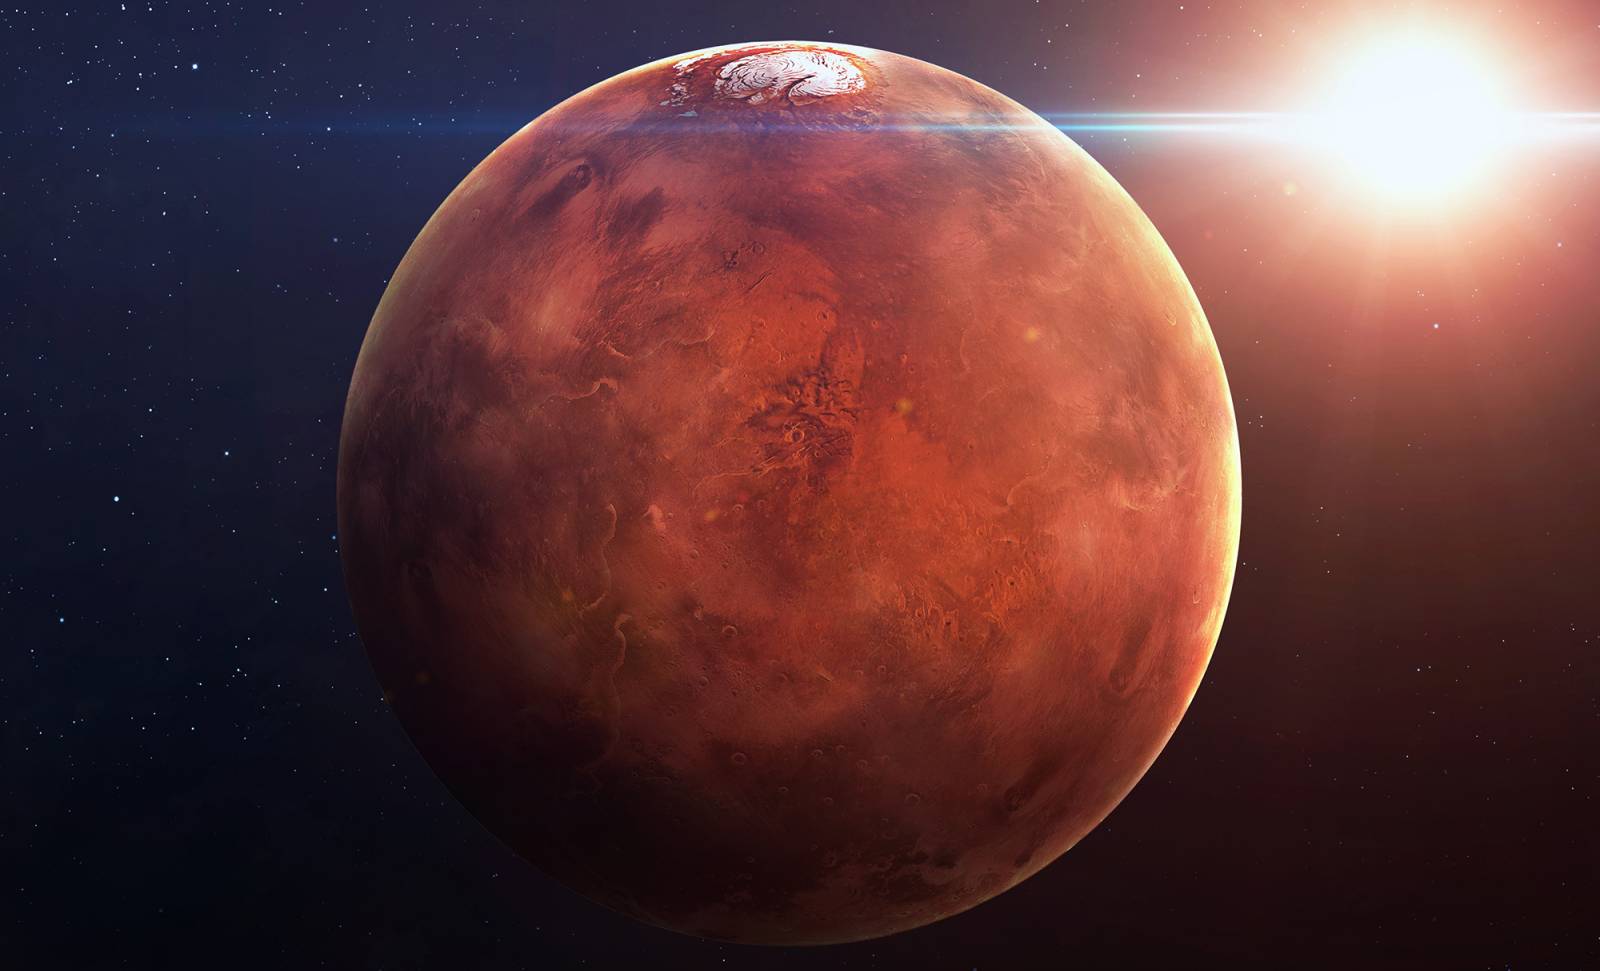 L'INCREDIBILE immagine del Pianeta Marte pubblicata dalla NASA